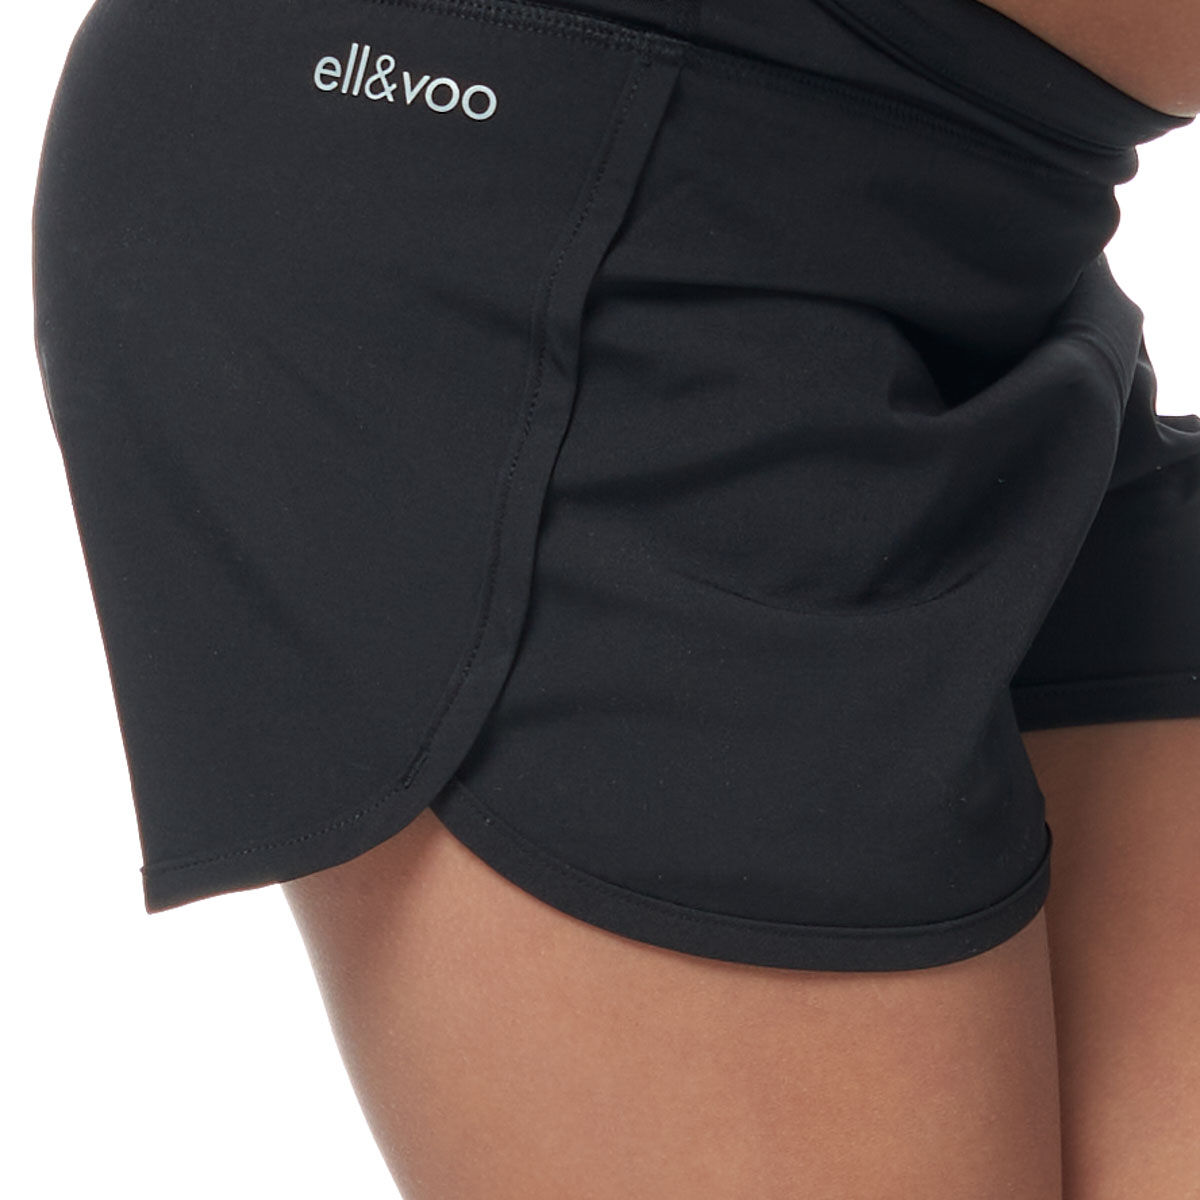 Ell & Voo Junior Girls Essentials 2 in 1 Shorts Black 4